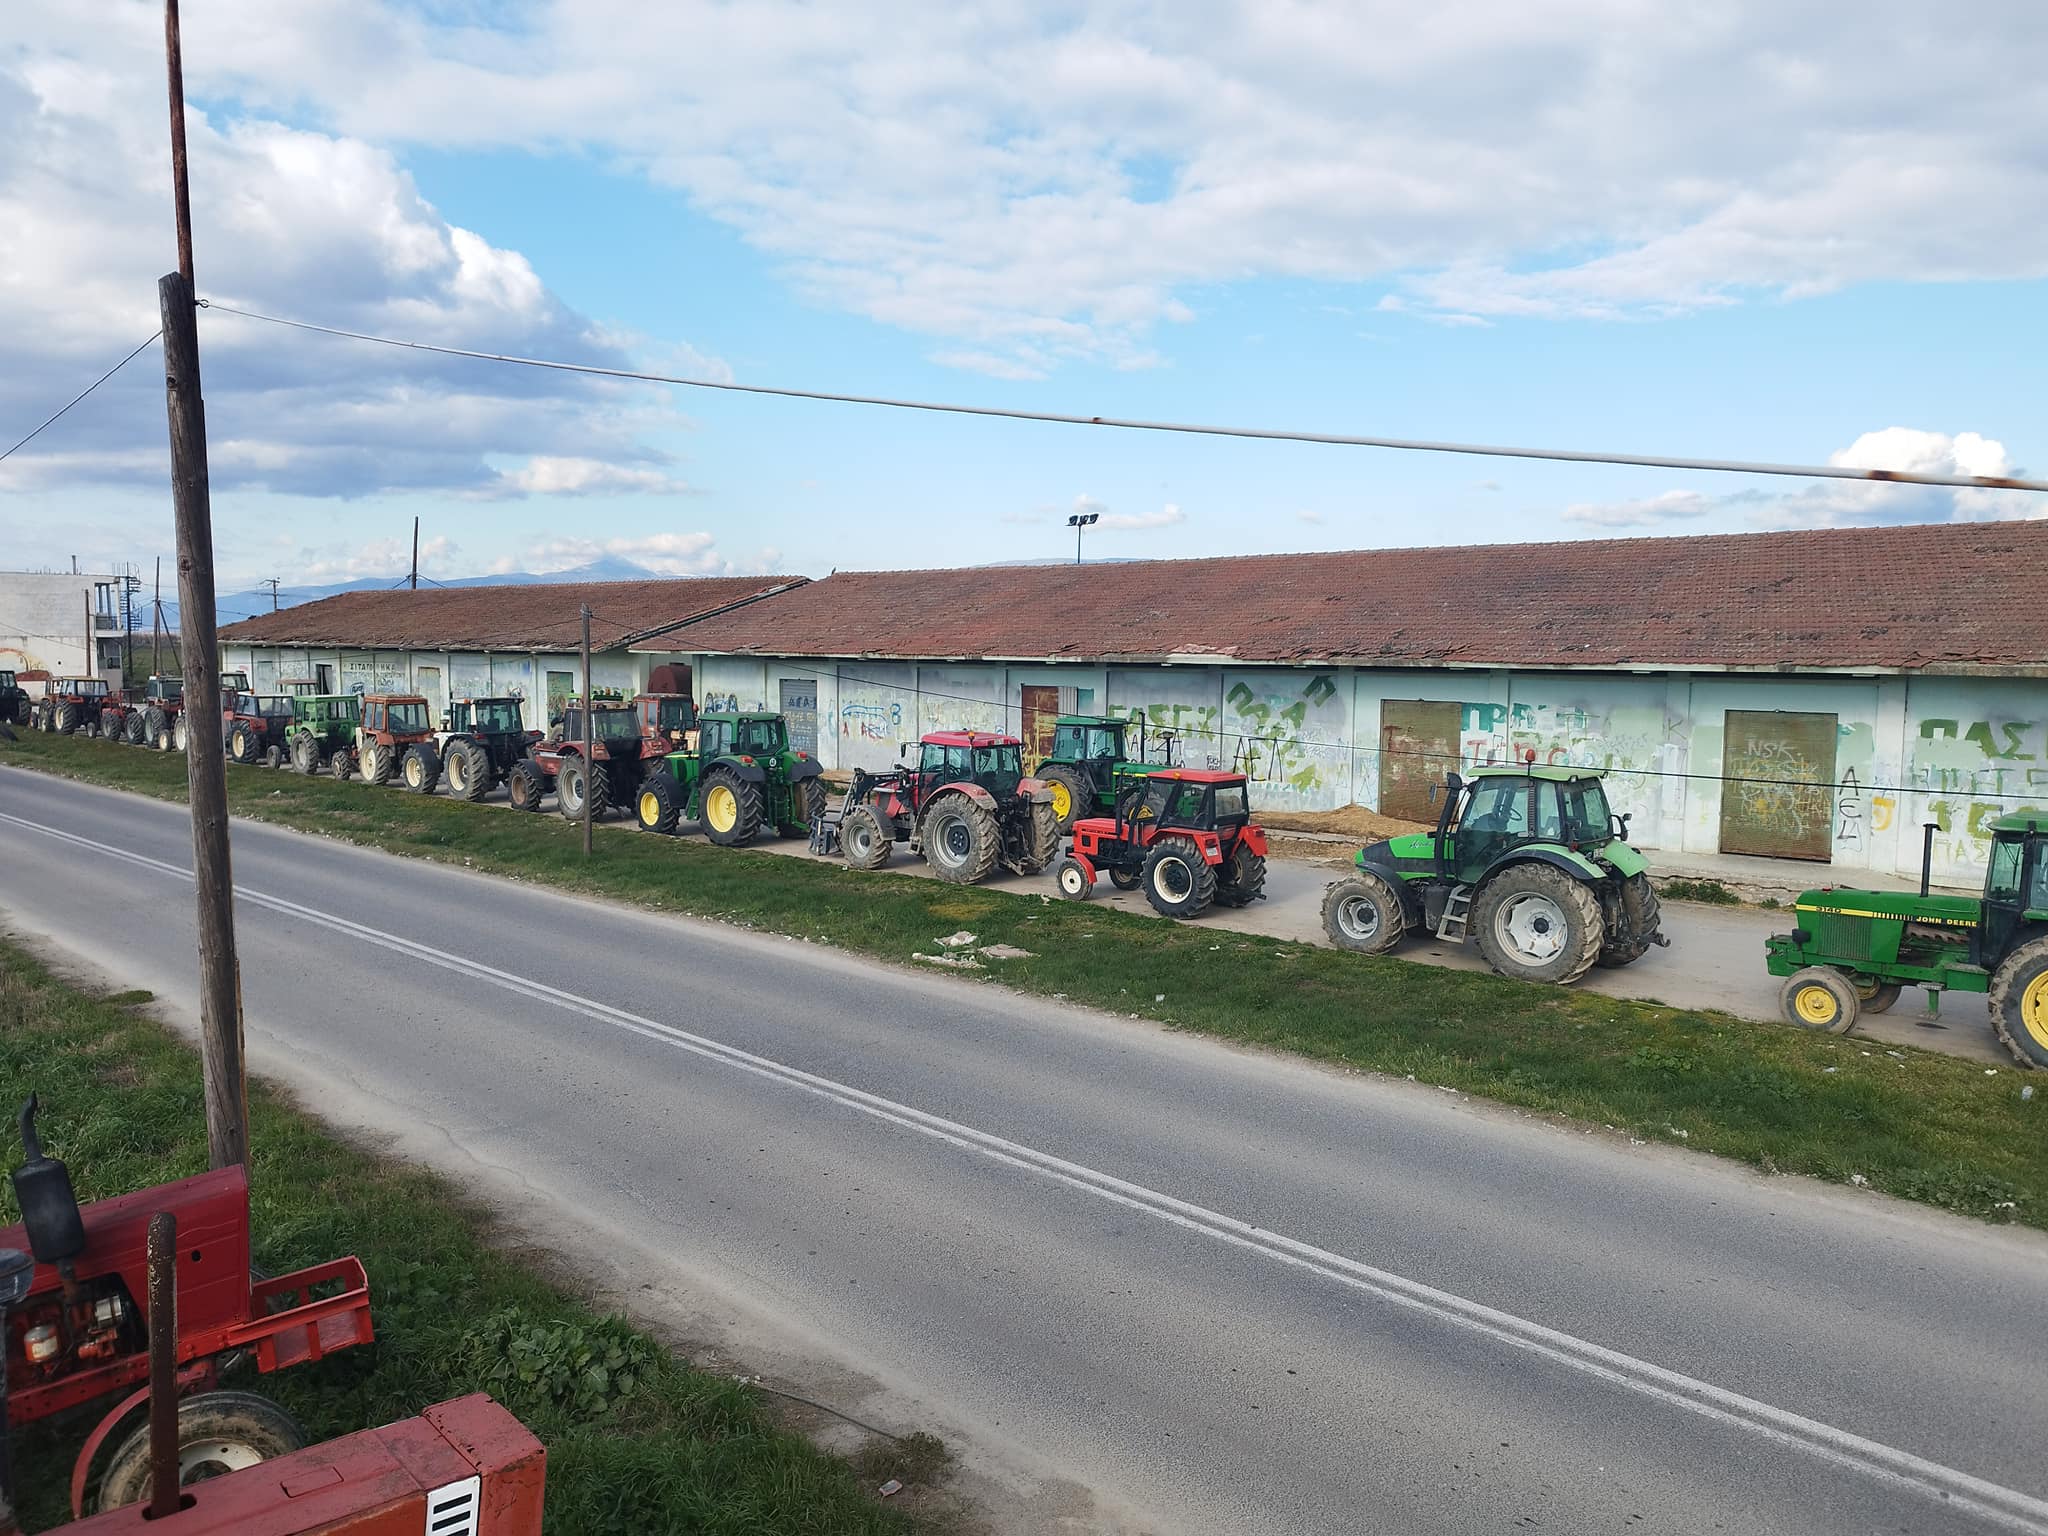 Βόλος: Συγκέντρωση αγροτών και φορέων στο Στεφανοβίκειο – Αποκλεισμός της παλιάς εθνικής οδού